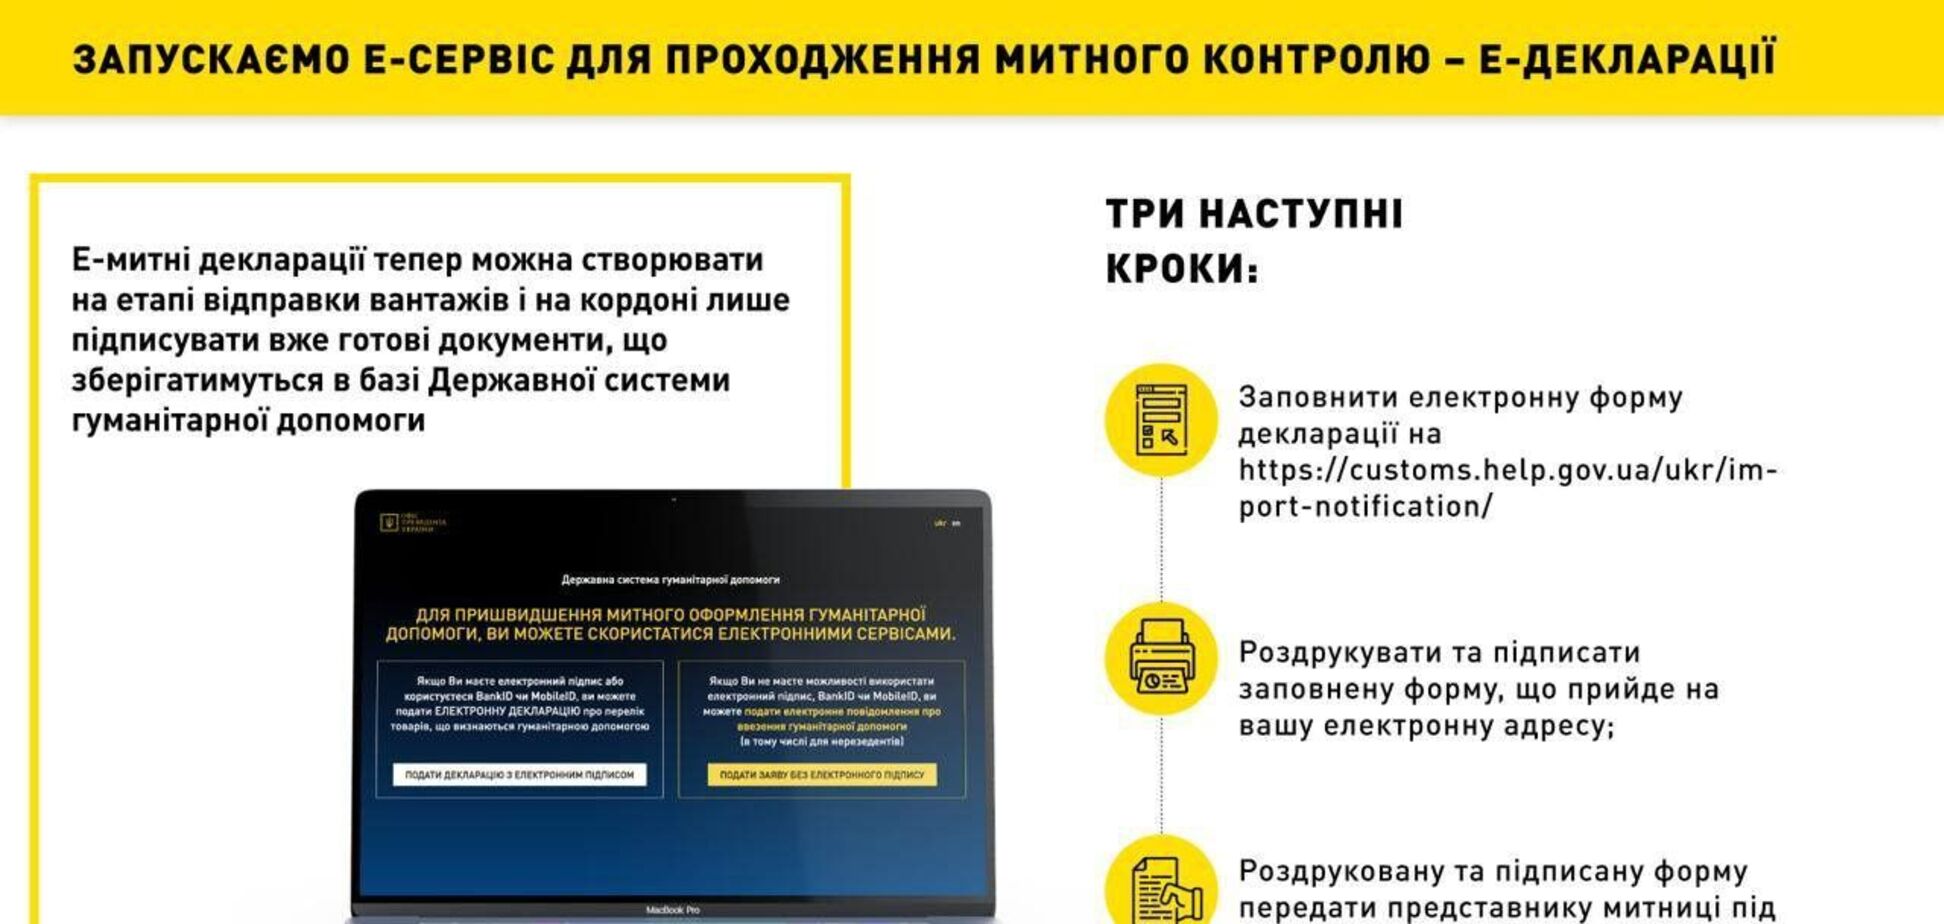 В Україні запрацювала митна Е-декларація для гуманітарних вантажів